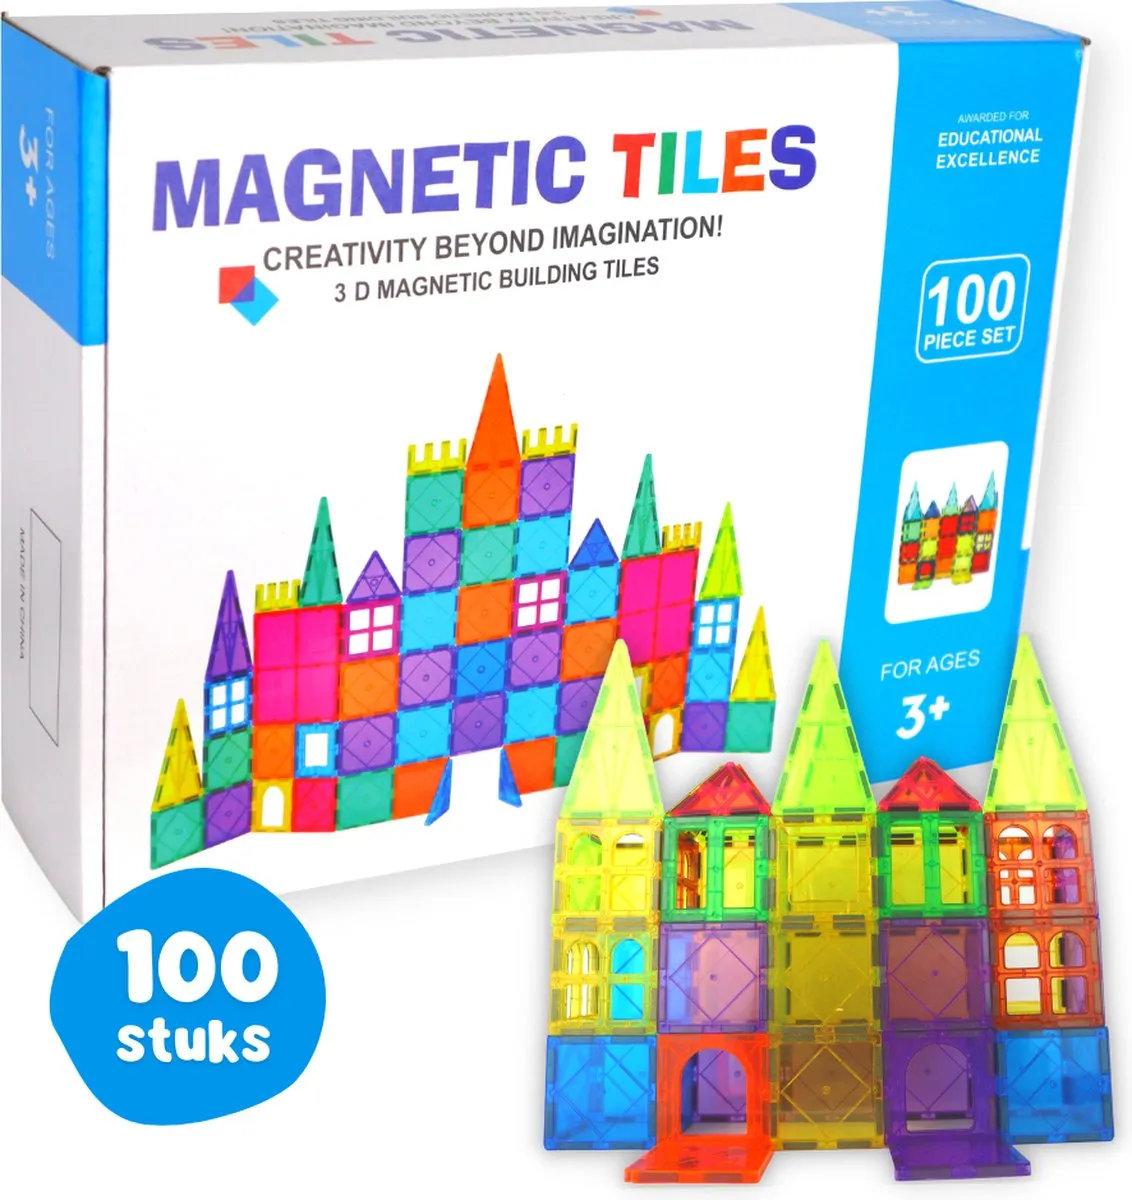 Magnetisch Speelgoed – 100 Stuks – Magna Tiles – Constructiespeelgoed - Magnetic Tiles - Blokken Voor Kinderen - Magnetische Tegels – 3D Puzzel – Creatief Speelgoed – Bouwblokken speelgoed